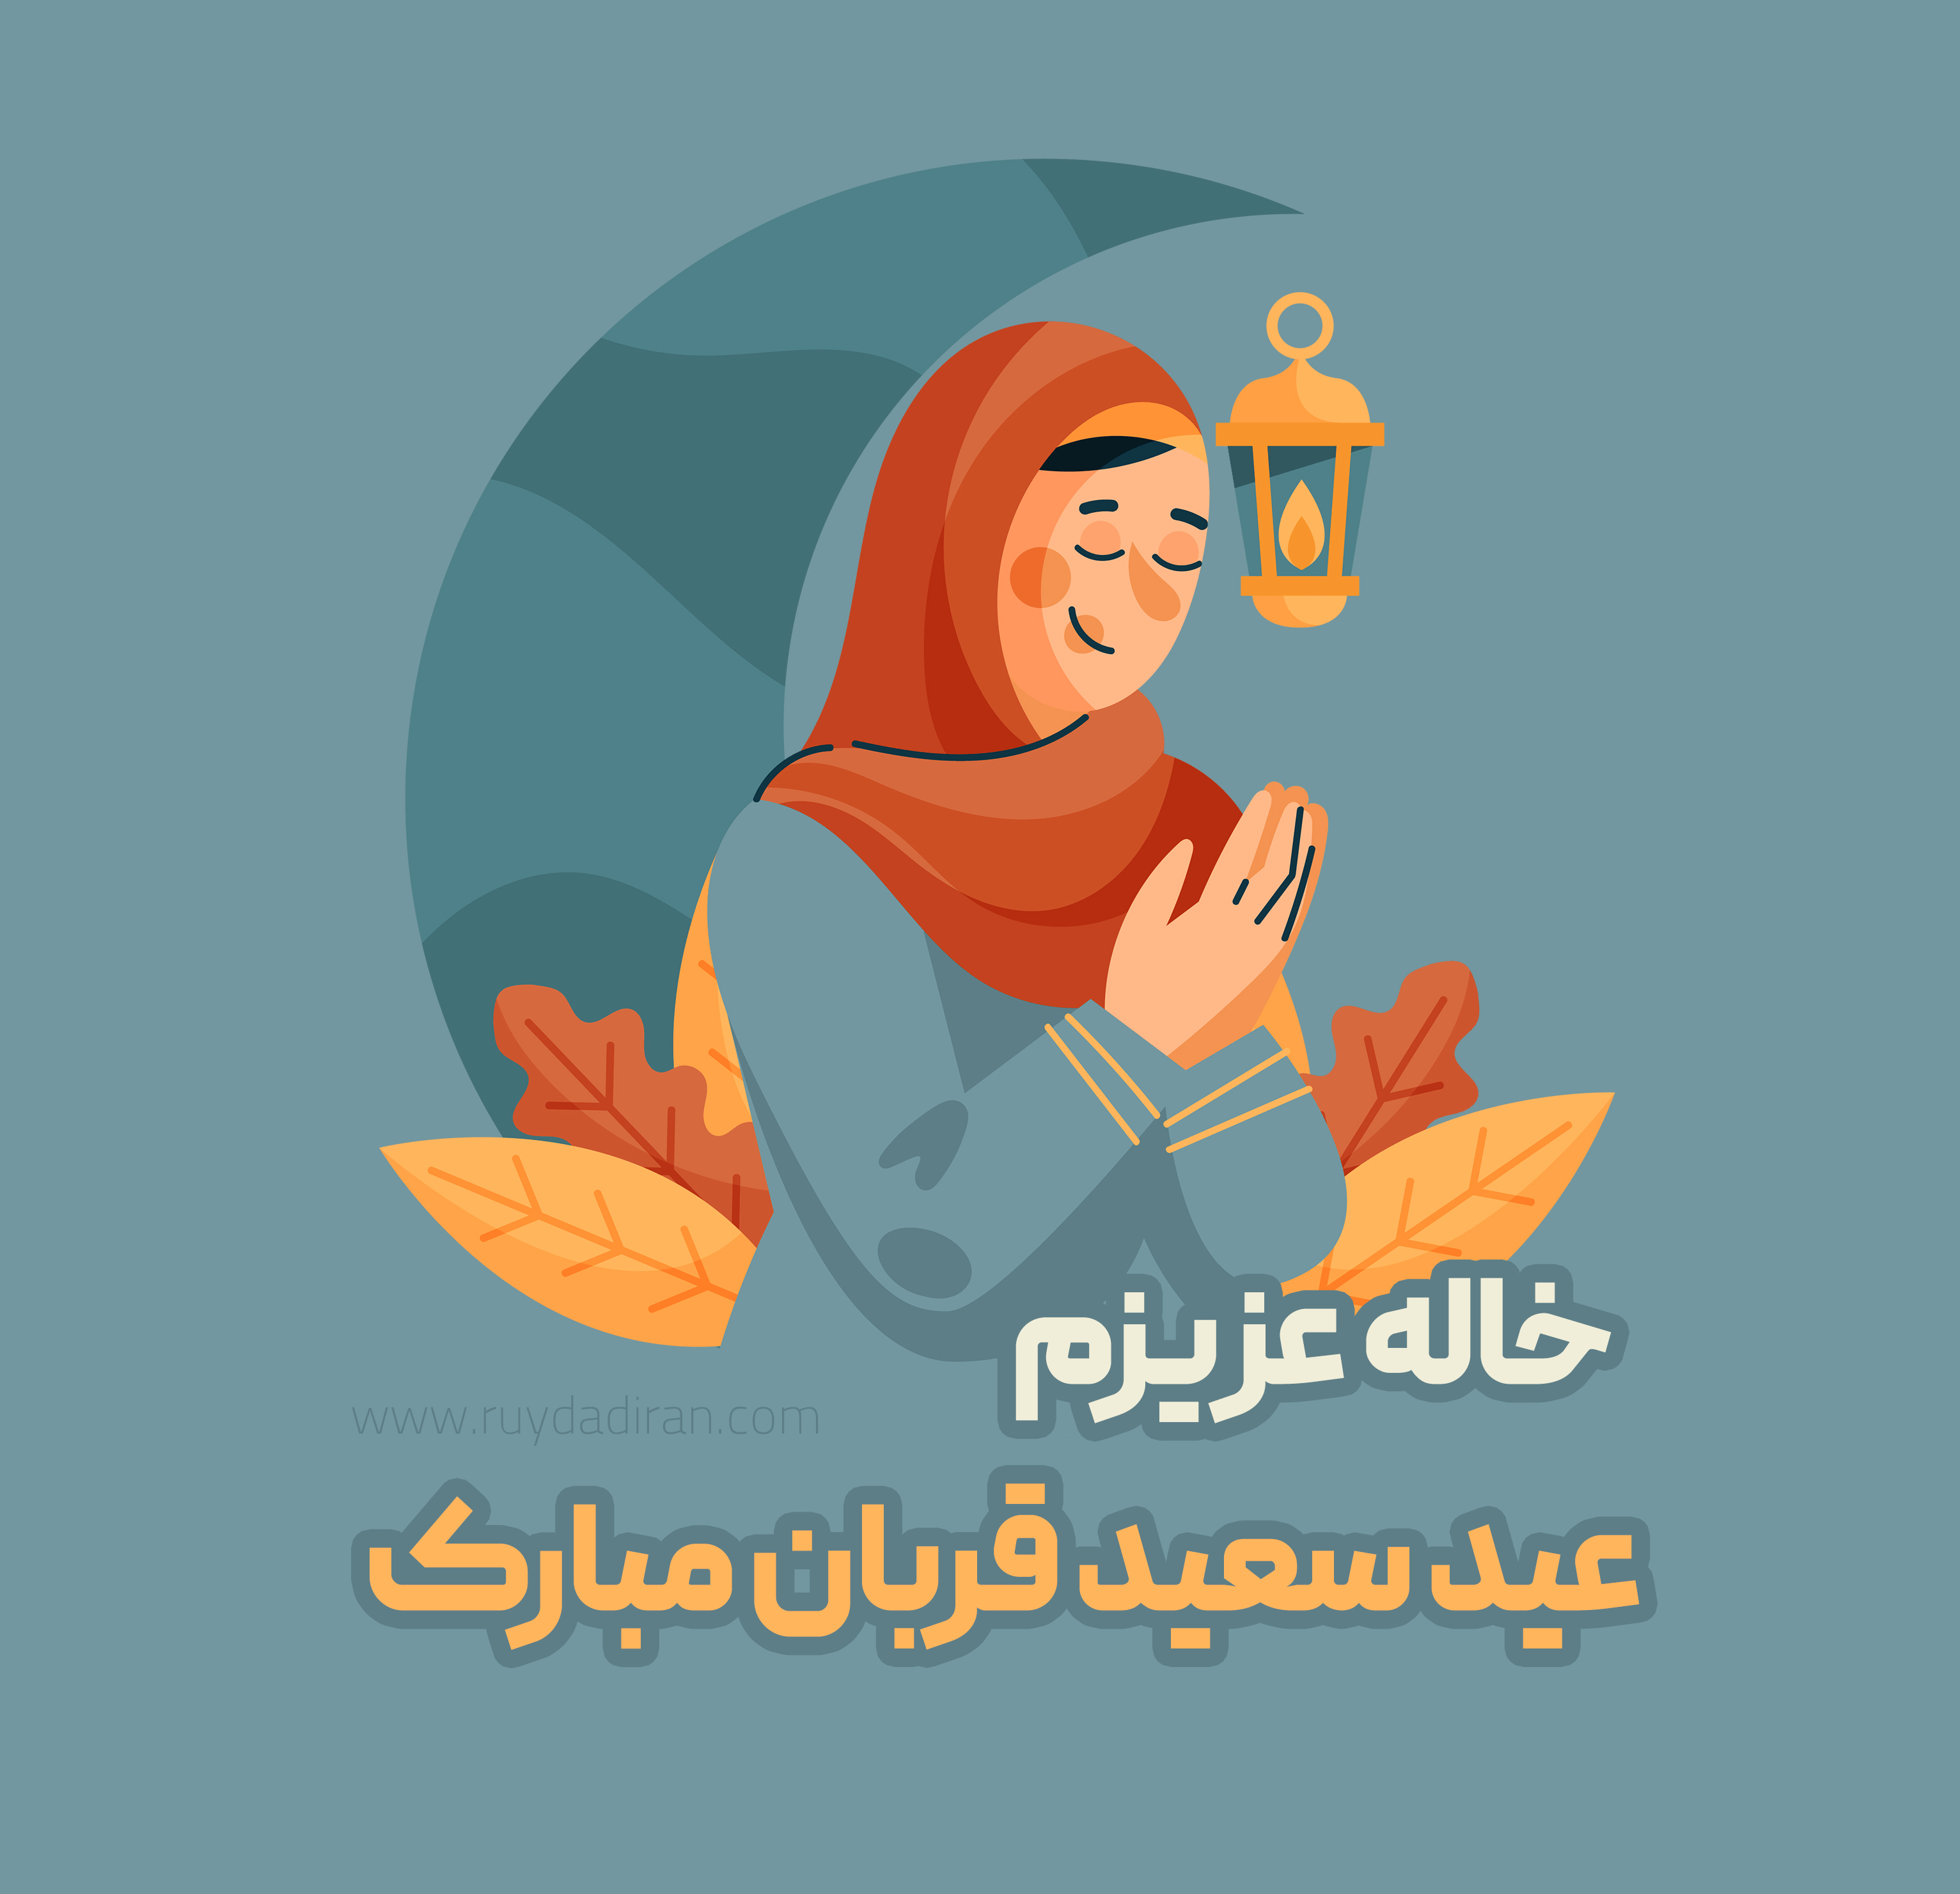 تبریک عید قربان به خاله و عمه 1401؛ متن پیام و عکس نوشته